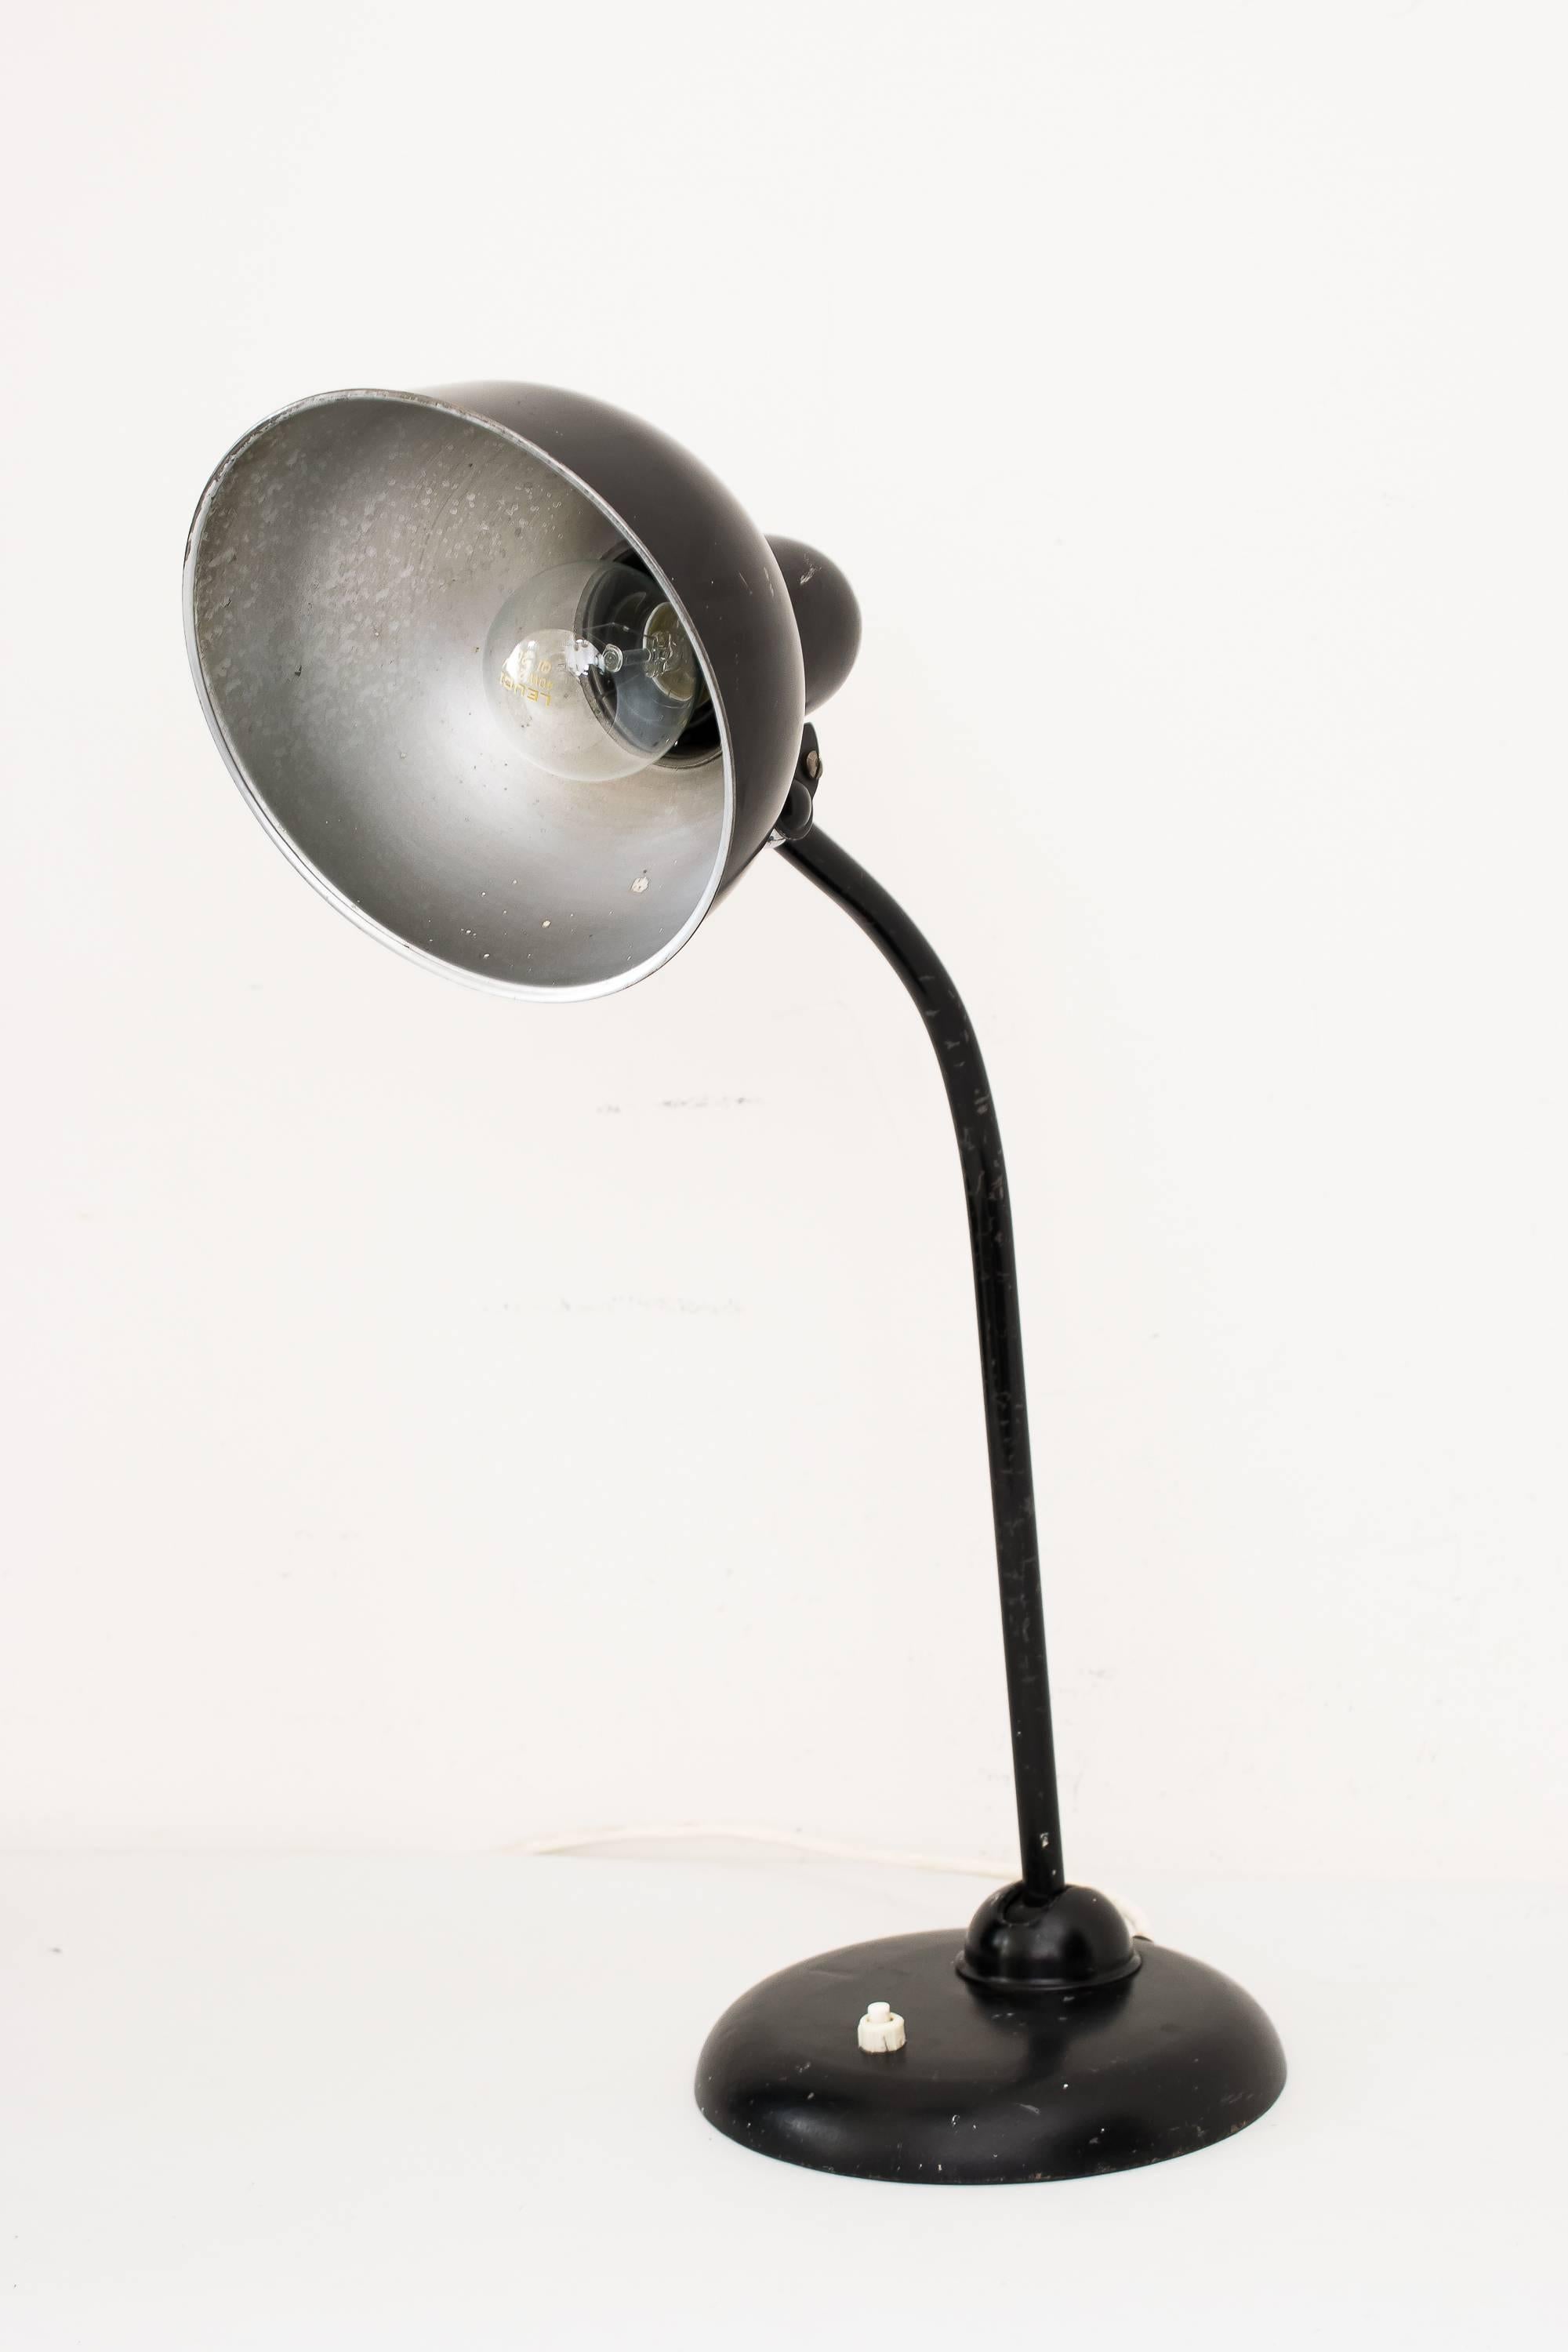 Verstellbare Schreibtischlampe aus emailliertem Stahl, entworfen von Christian Dell für Idell Kaiser Deutschland, um 1930.
Ursprünglicher Zustand.